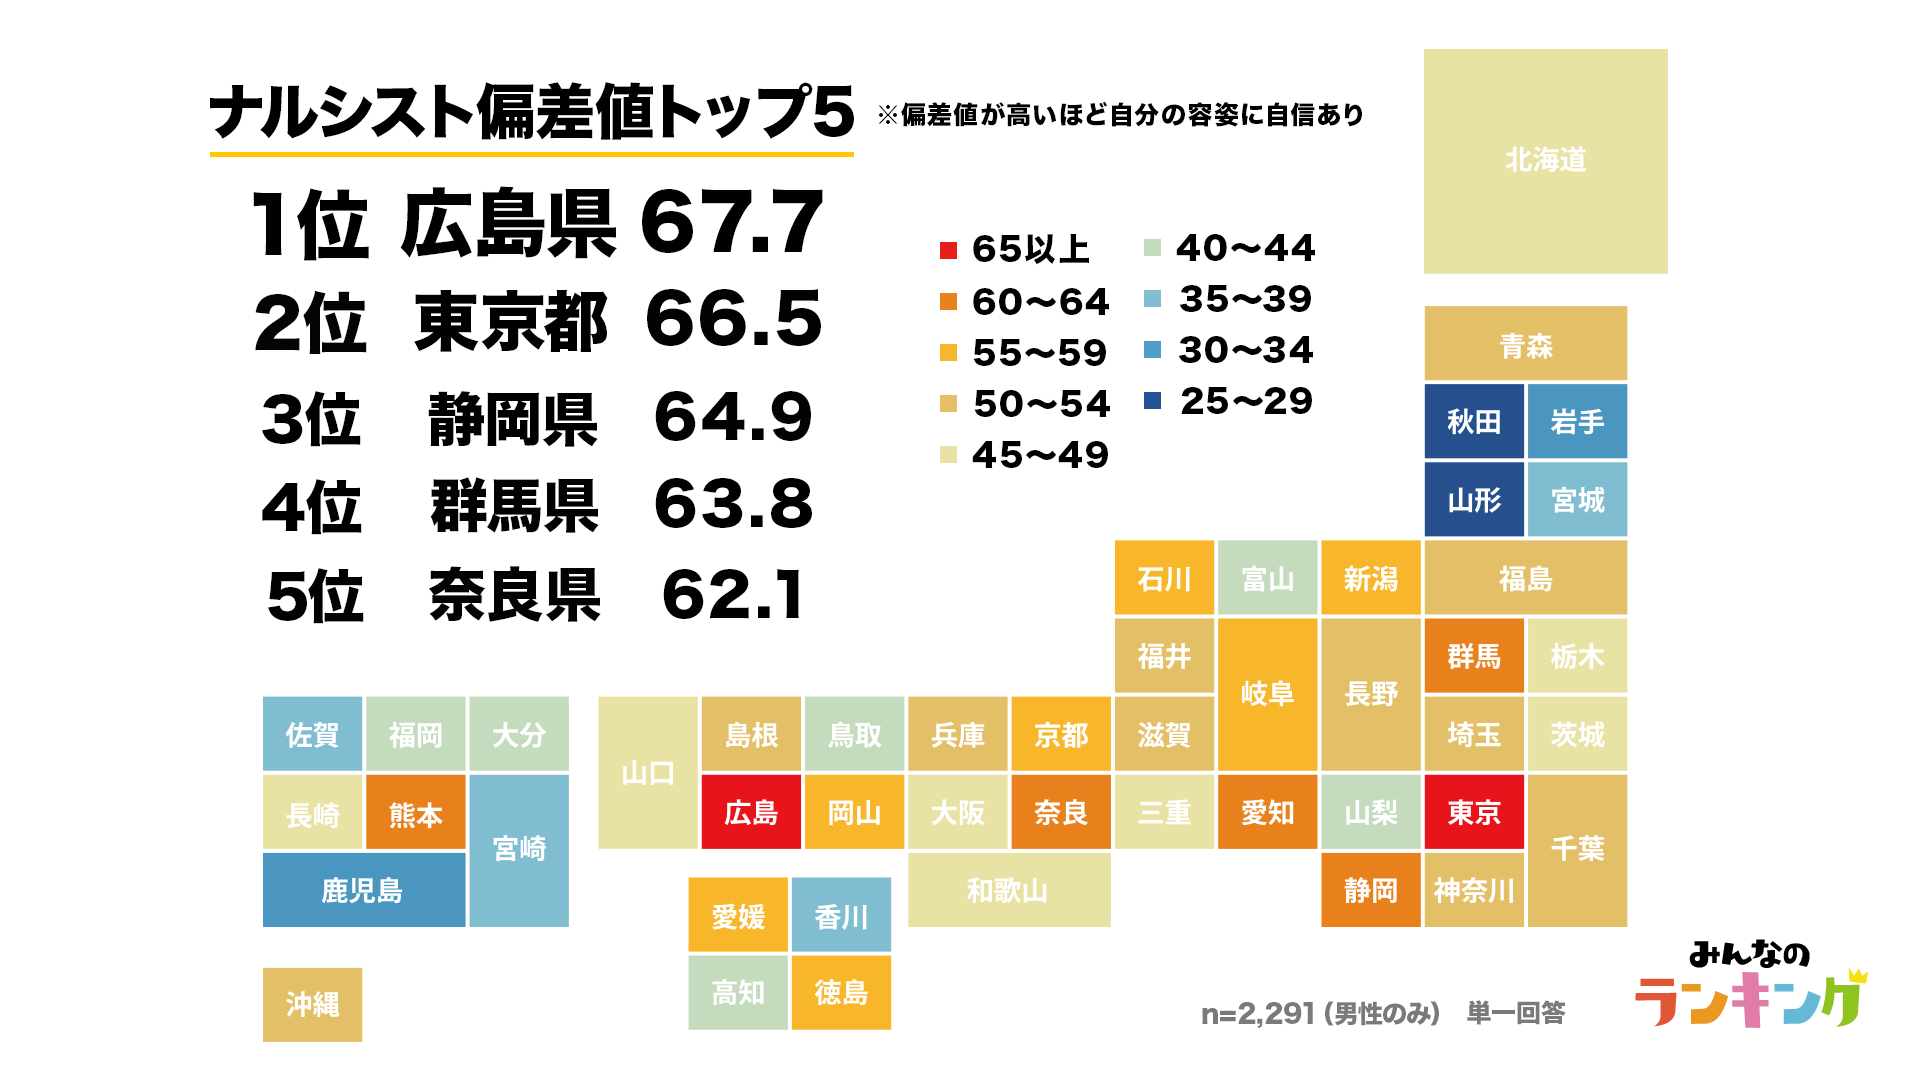 2位が東京で1位は 都道府県別ナルシスト偏差値ランキング 株式会社hanabishiのプレスリリース